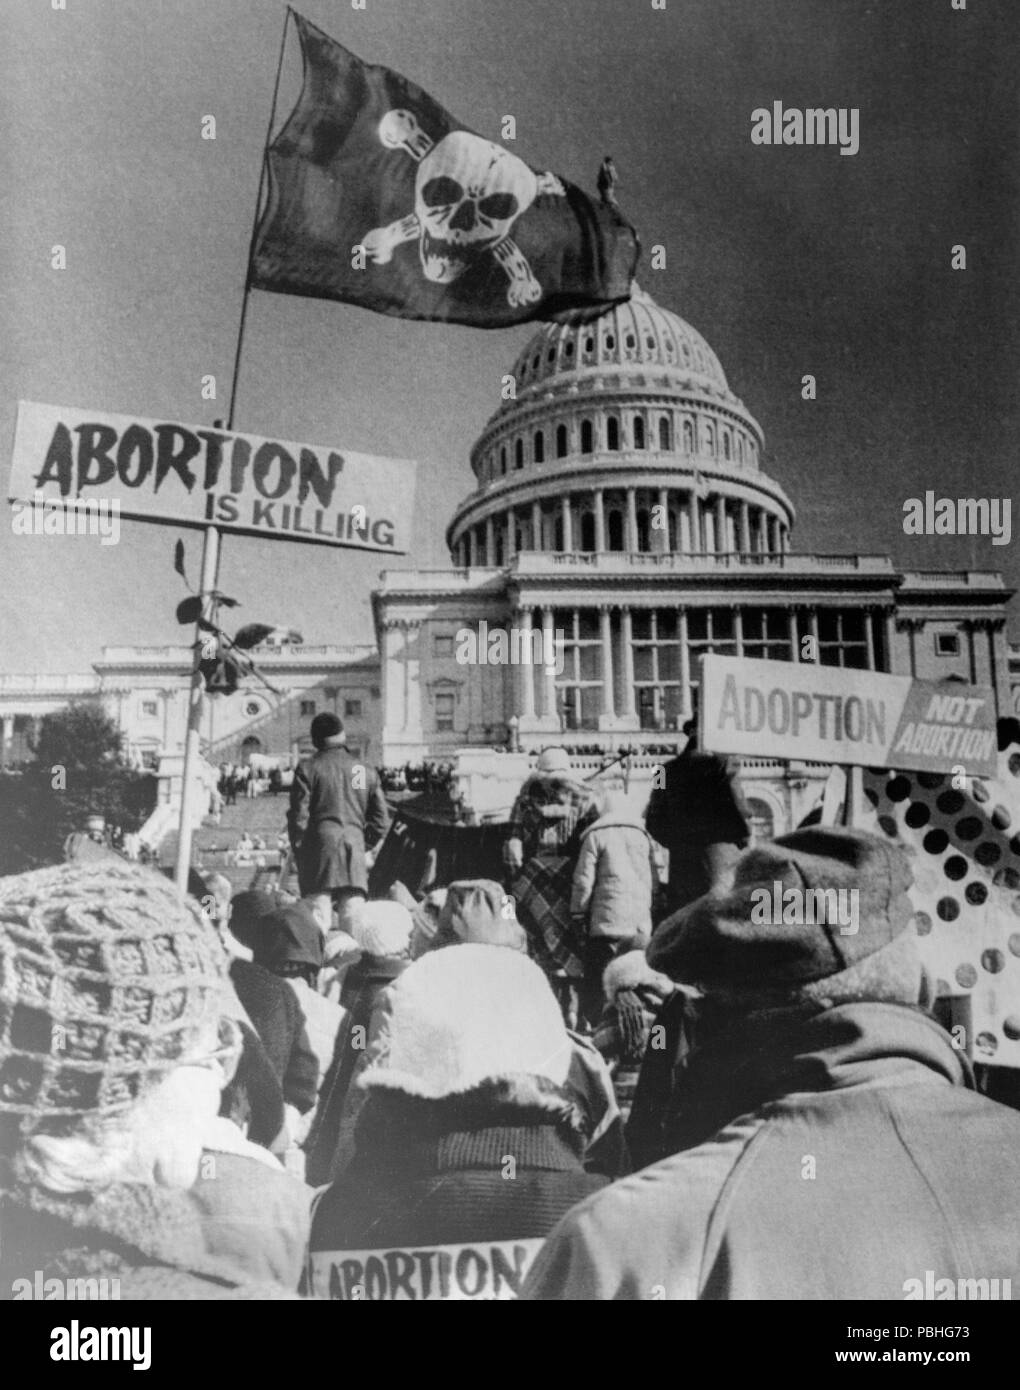 22 janvier 1977. Washington DC, USA. Manifestants anti avortement rallye sur le sol de la capitale avant leur marche vers la Maison Blanche. Banque D'Images